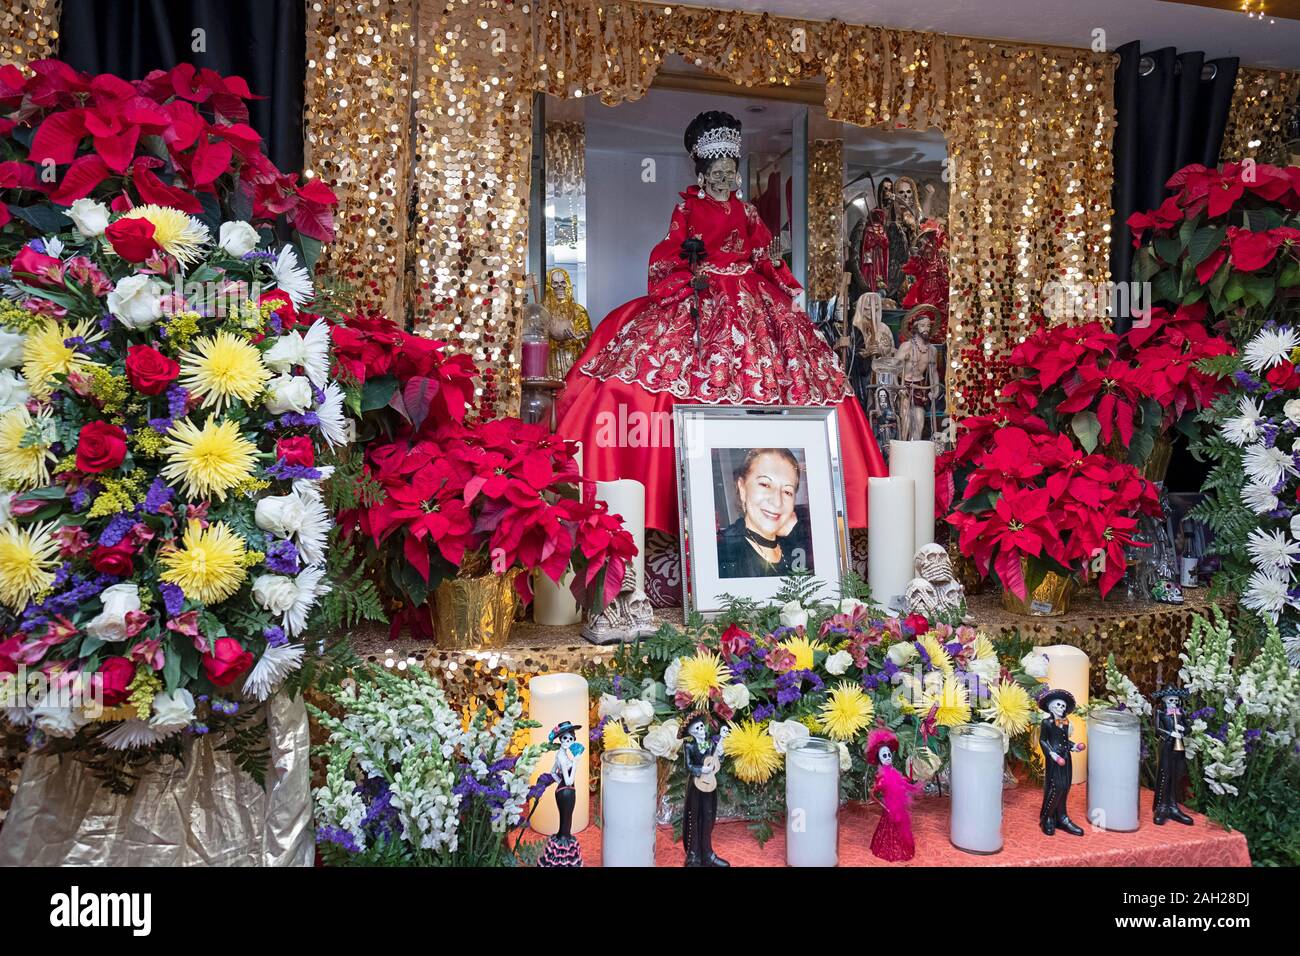 Altare in un tempio di casa decorata per un servizio in lutto per l'anniversario del passaggio di Enriqueta Vargas, il leader della Santa Muerte International. Foto Stock